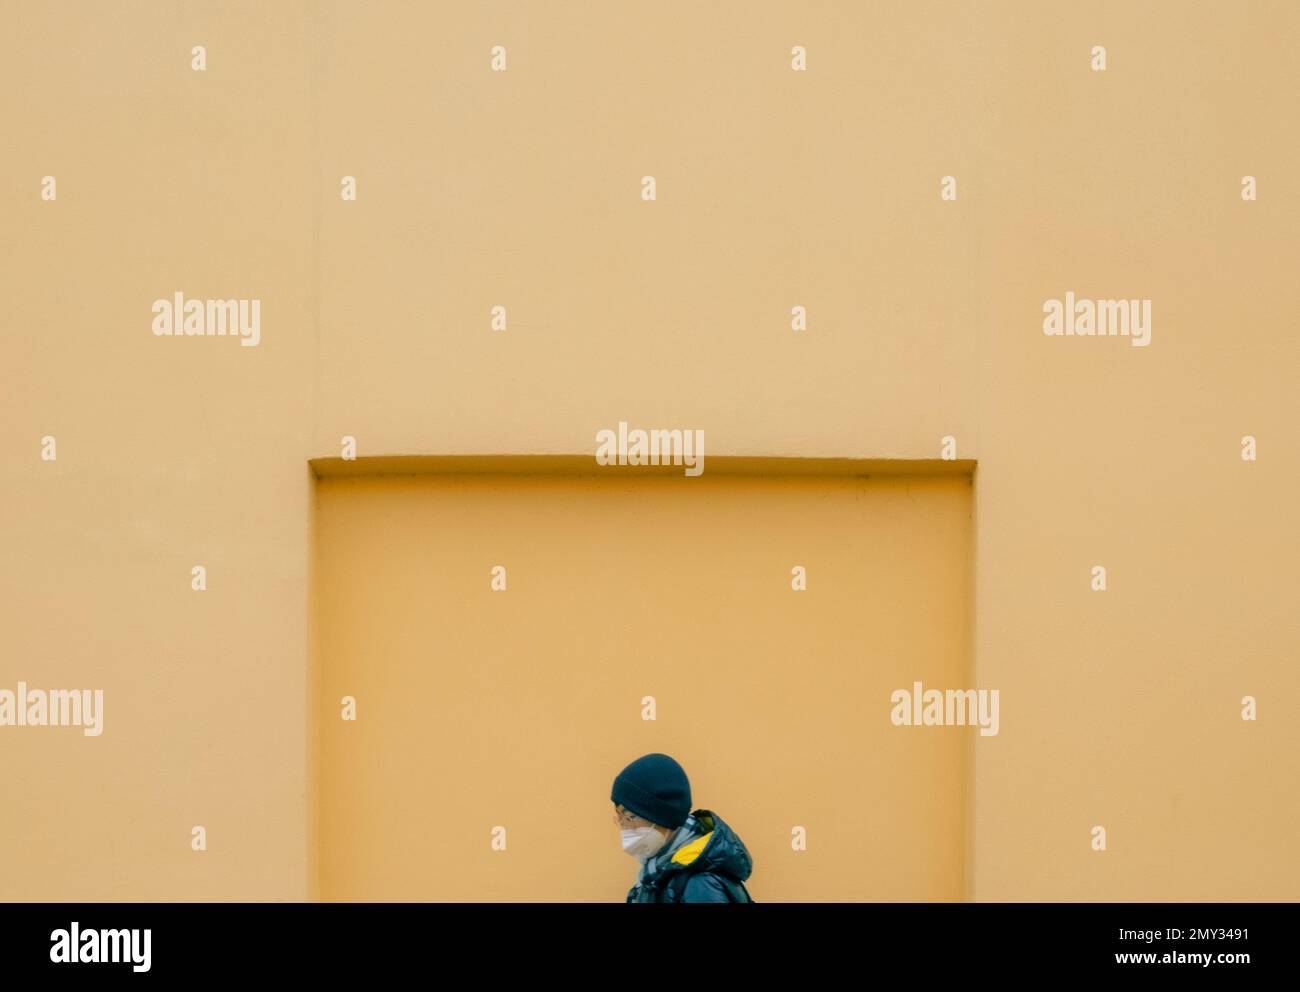 Eine Person, die vor einer orangefarbenen Mauer geht Stockfoto